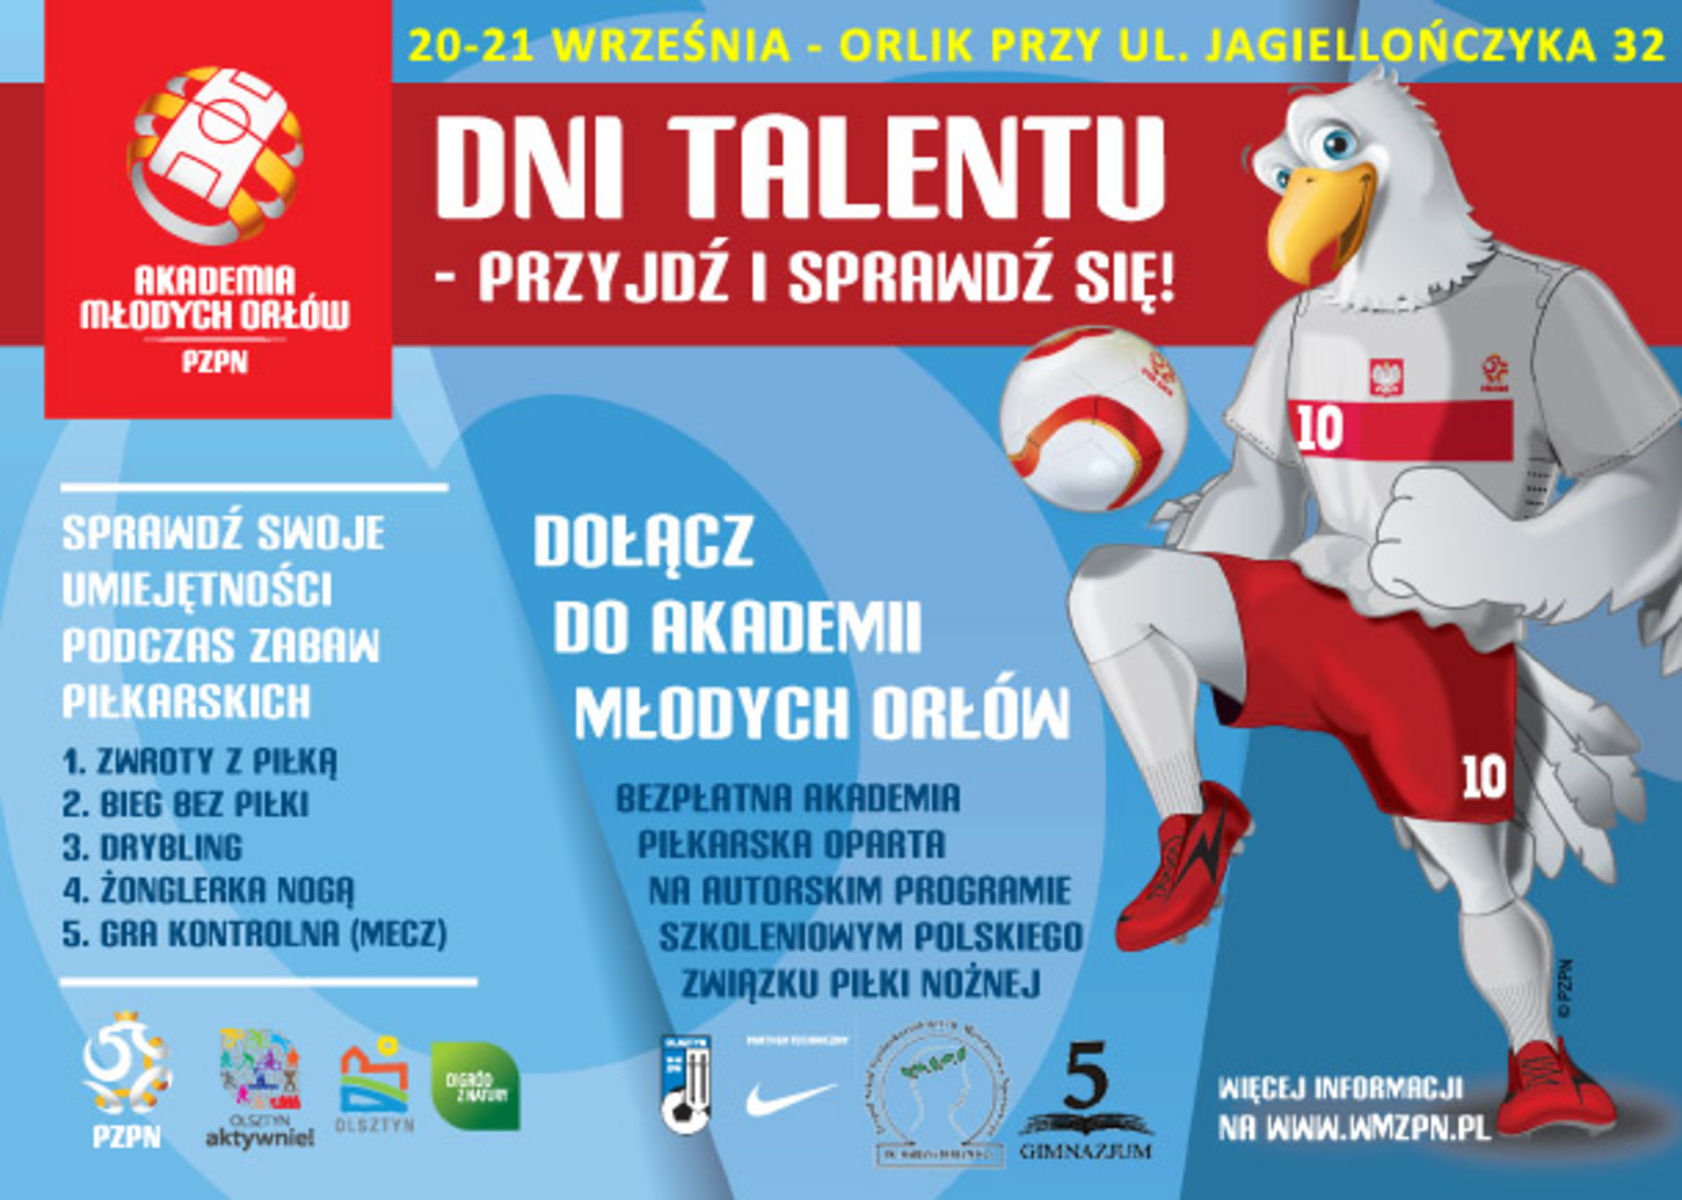 Plakat promujący nabór do Akademii Młodych Orłów. Fot. wmzpn.pl